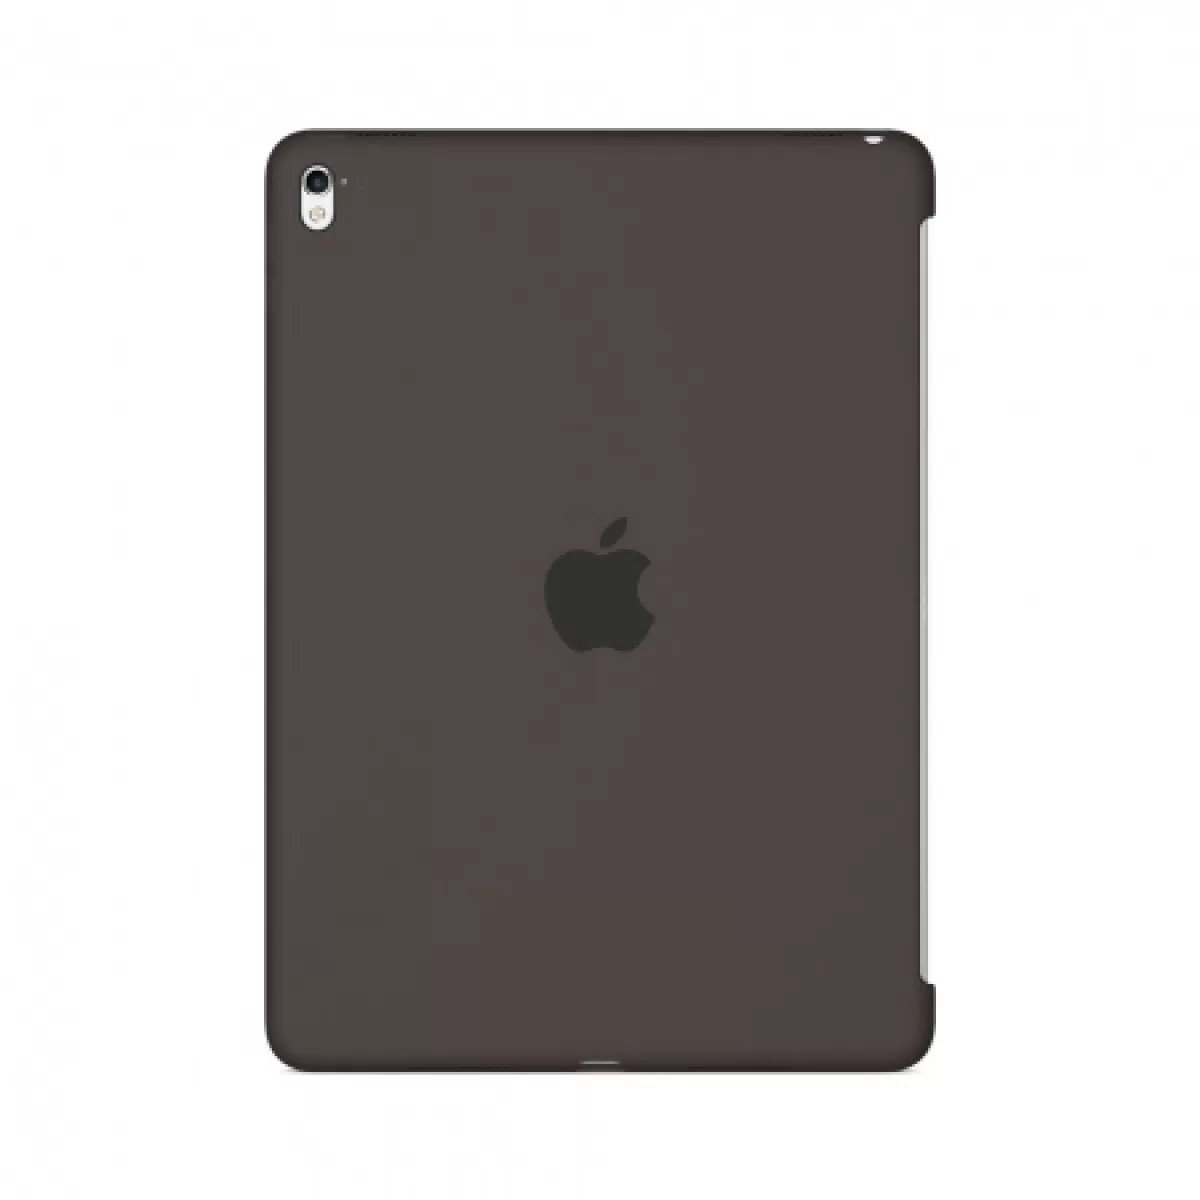 Apple Silicone Case for iPad Pro 9.7inch Cocoa